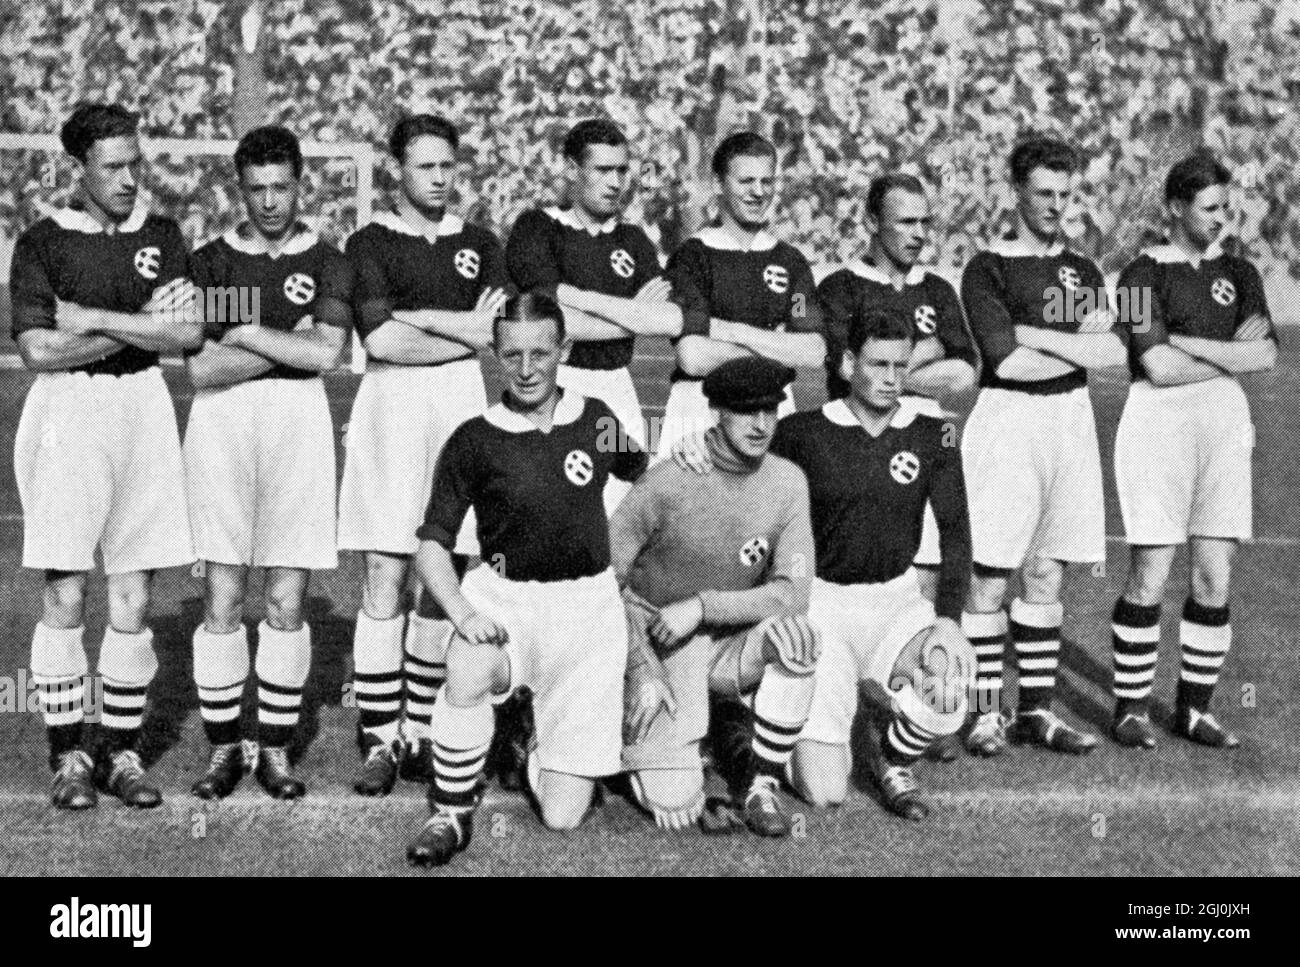 Jeux Olympiques de 1936, Berlin - équipes de football du monde entier - Norvège Fussballmannschaften aus aller Welt - Norwegen ©TopFoto Banque D'Images